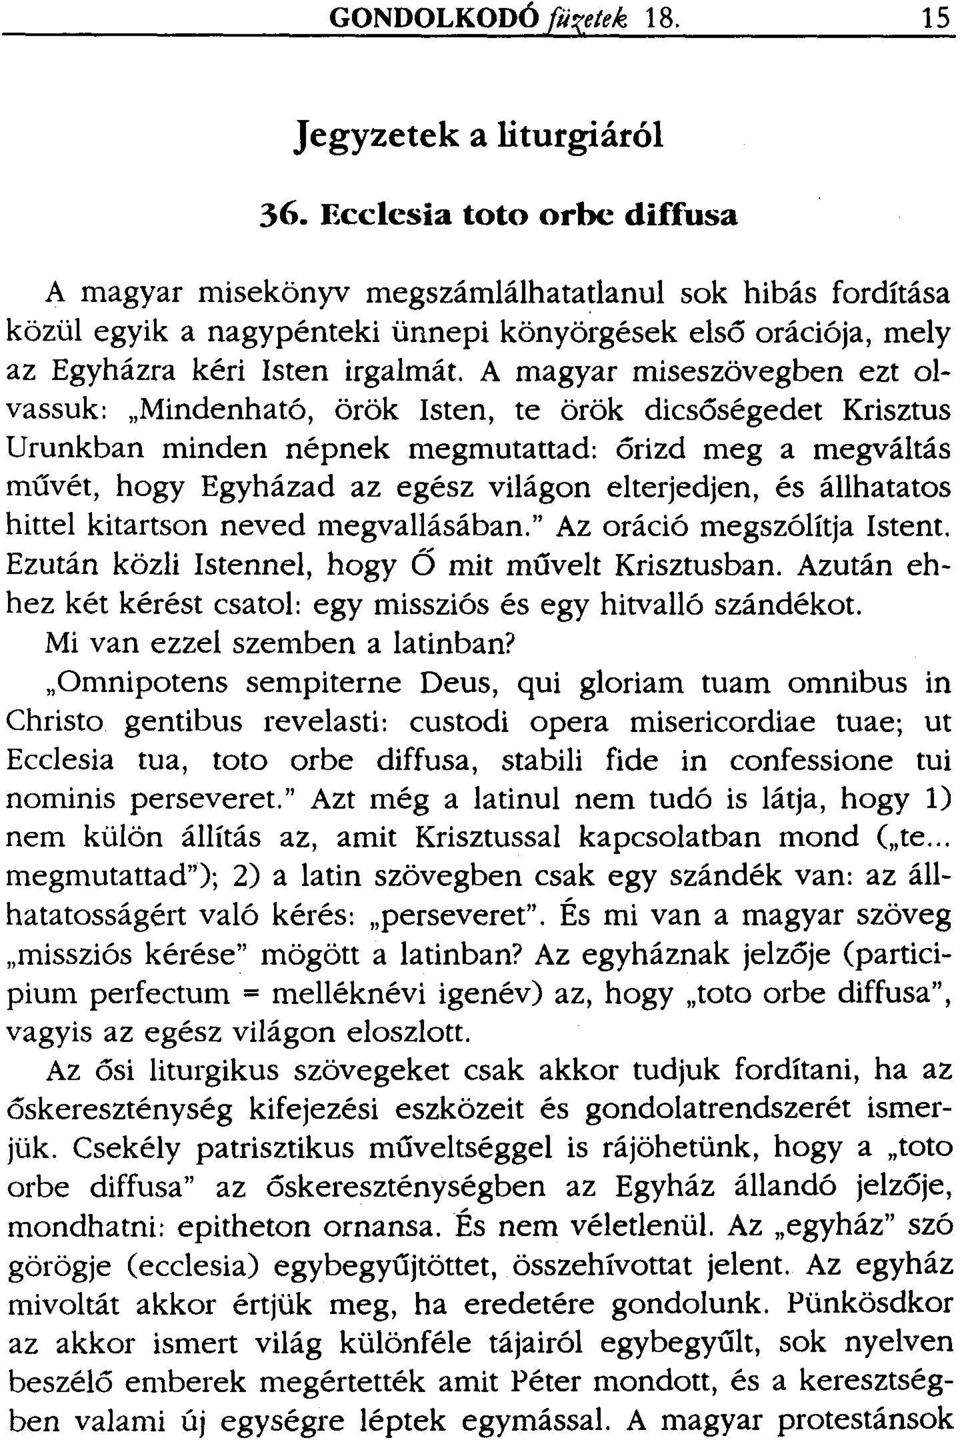 A magyar miseszövegben ezt olvassuk: "Mindenható, örök Isten, te örök dicsőségedet Krisztus Urunkban minden népnek megmutattad: őrizd meg a megváltás művét, hogy Egyházad az egész világon